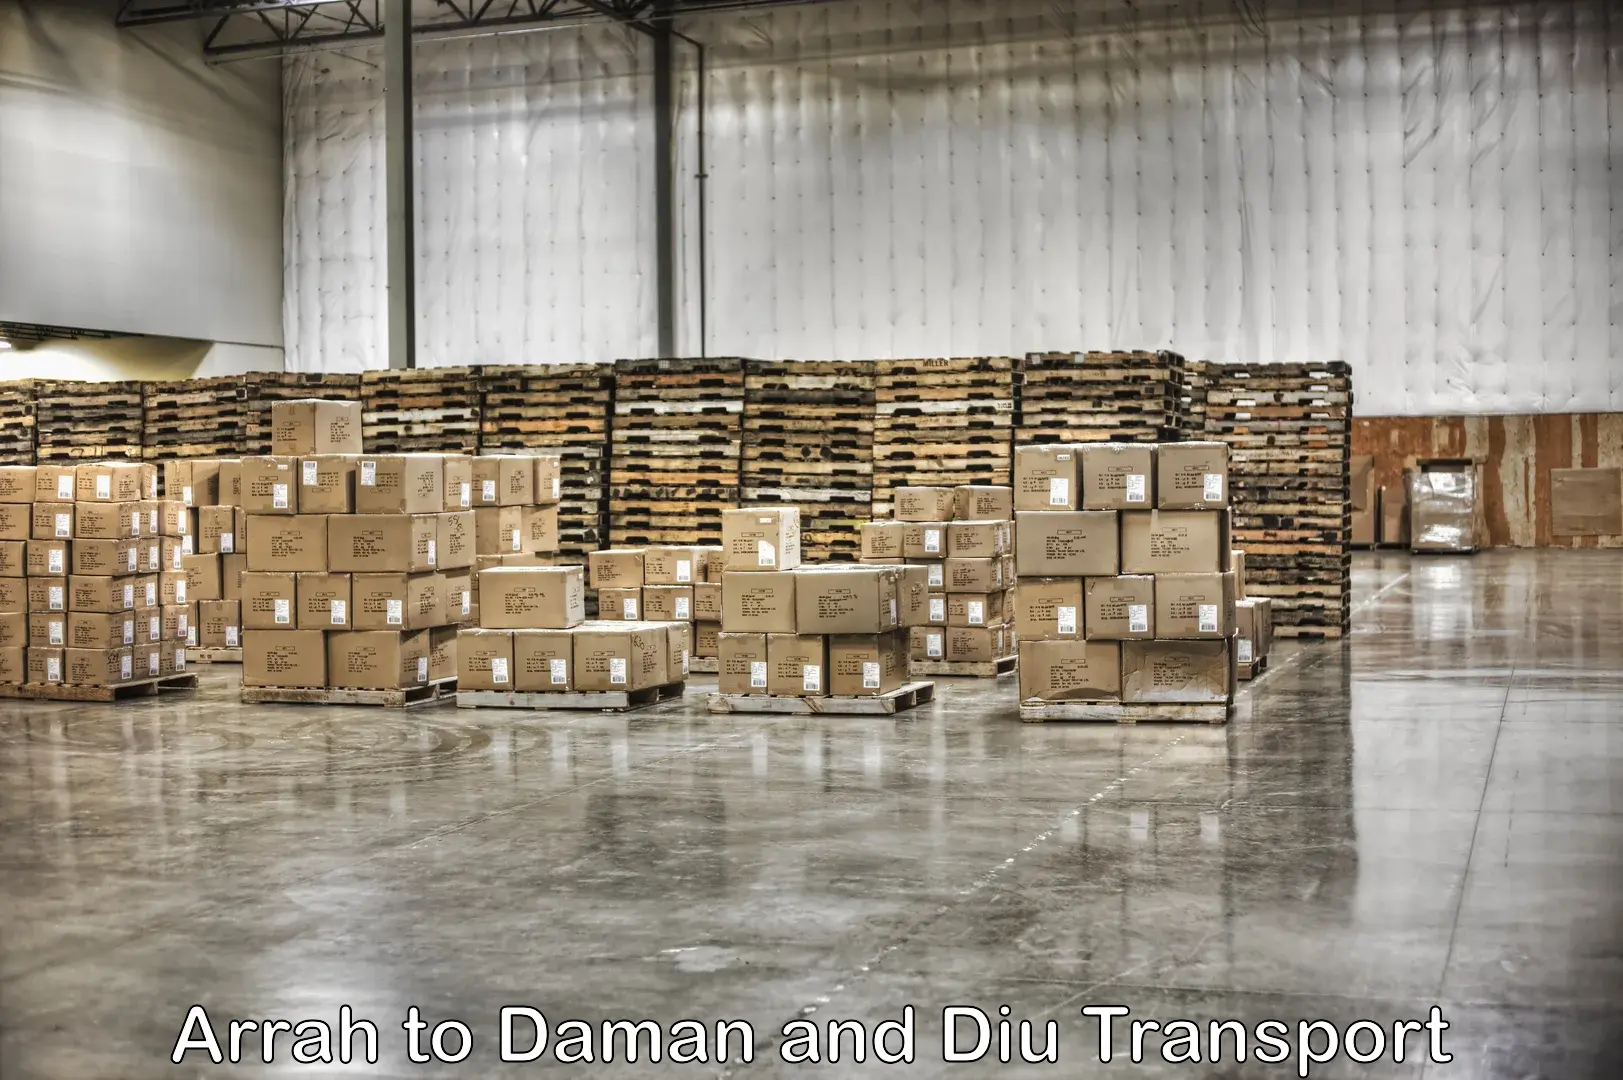 Furniture transport service Arrah to Daman and Diu